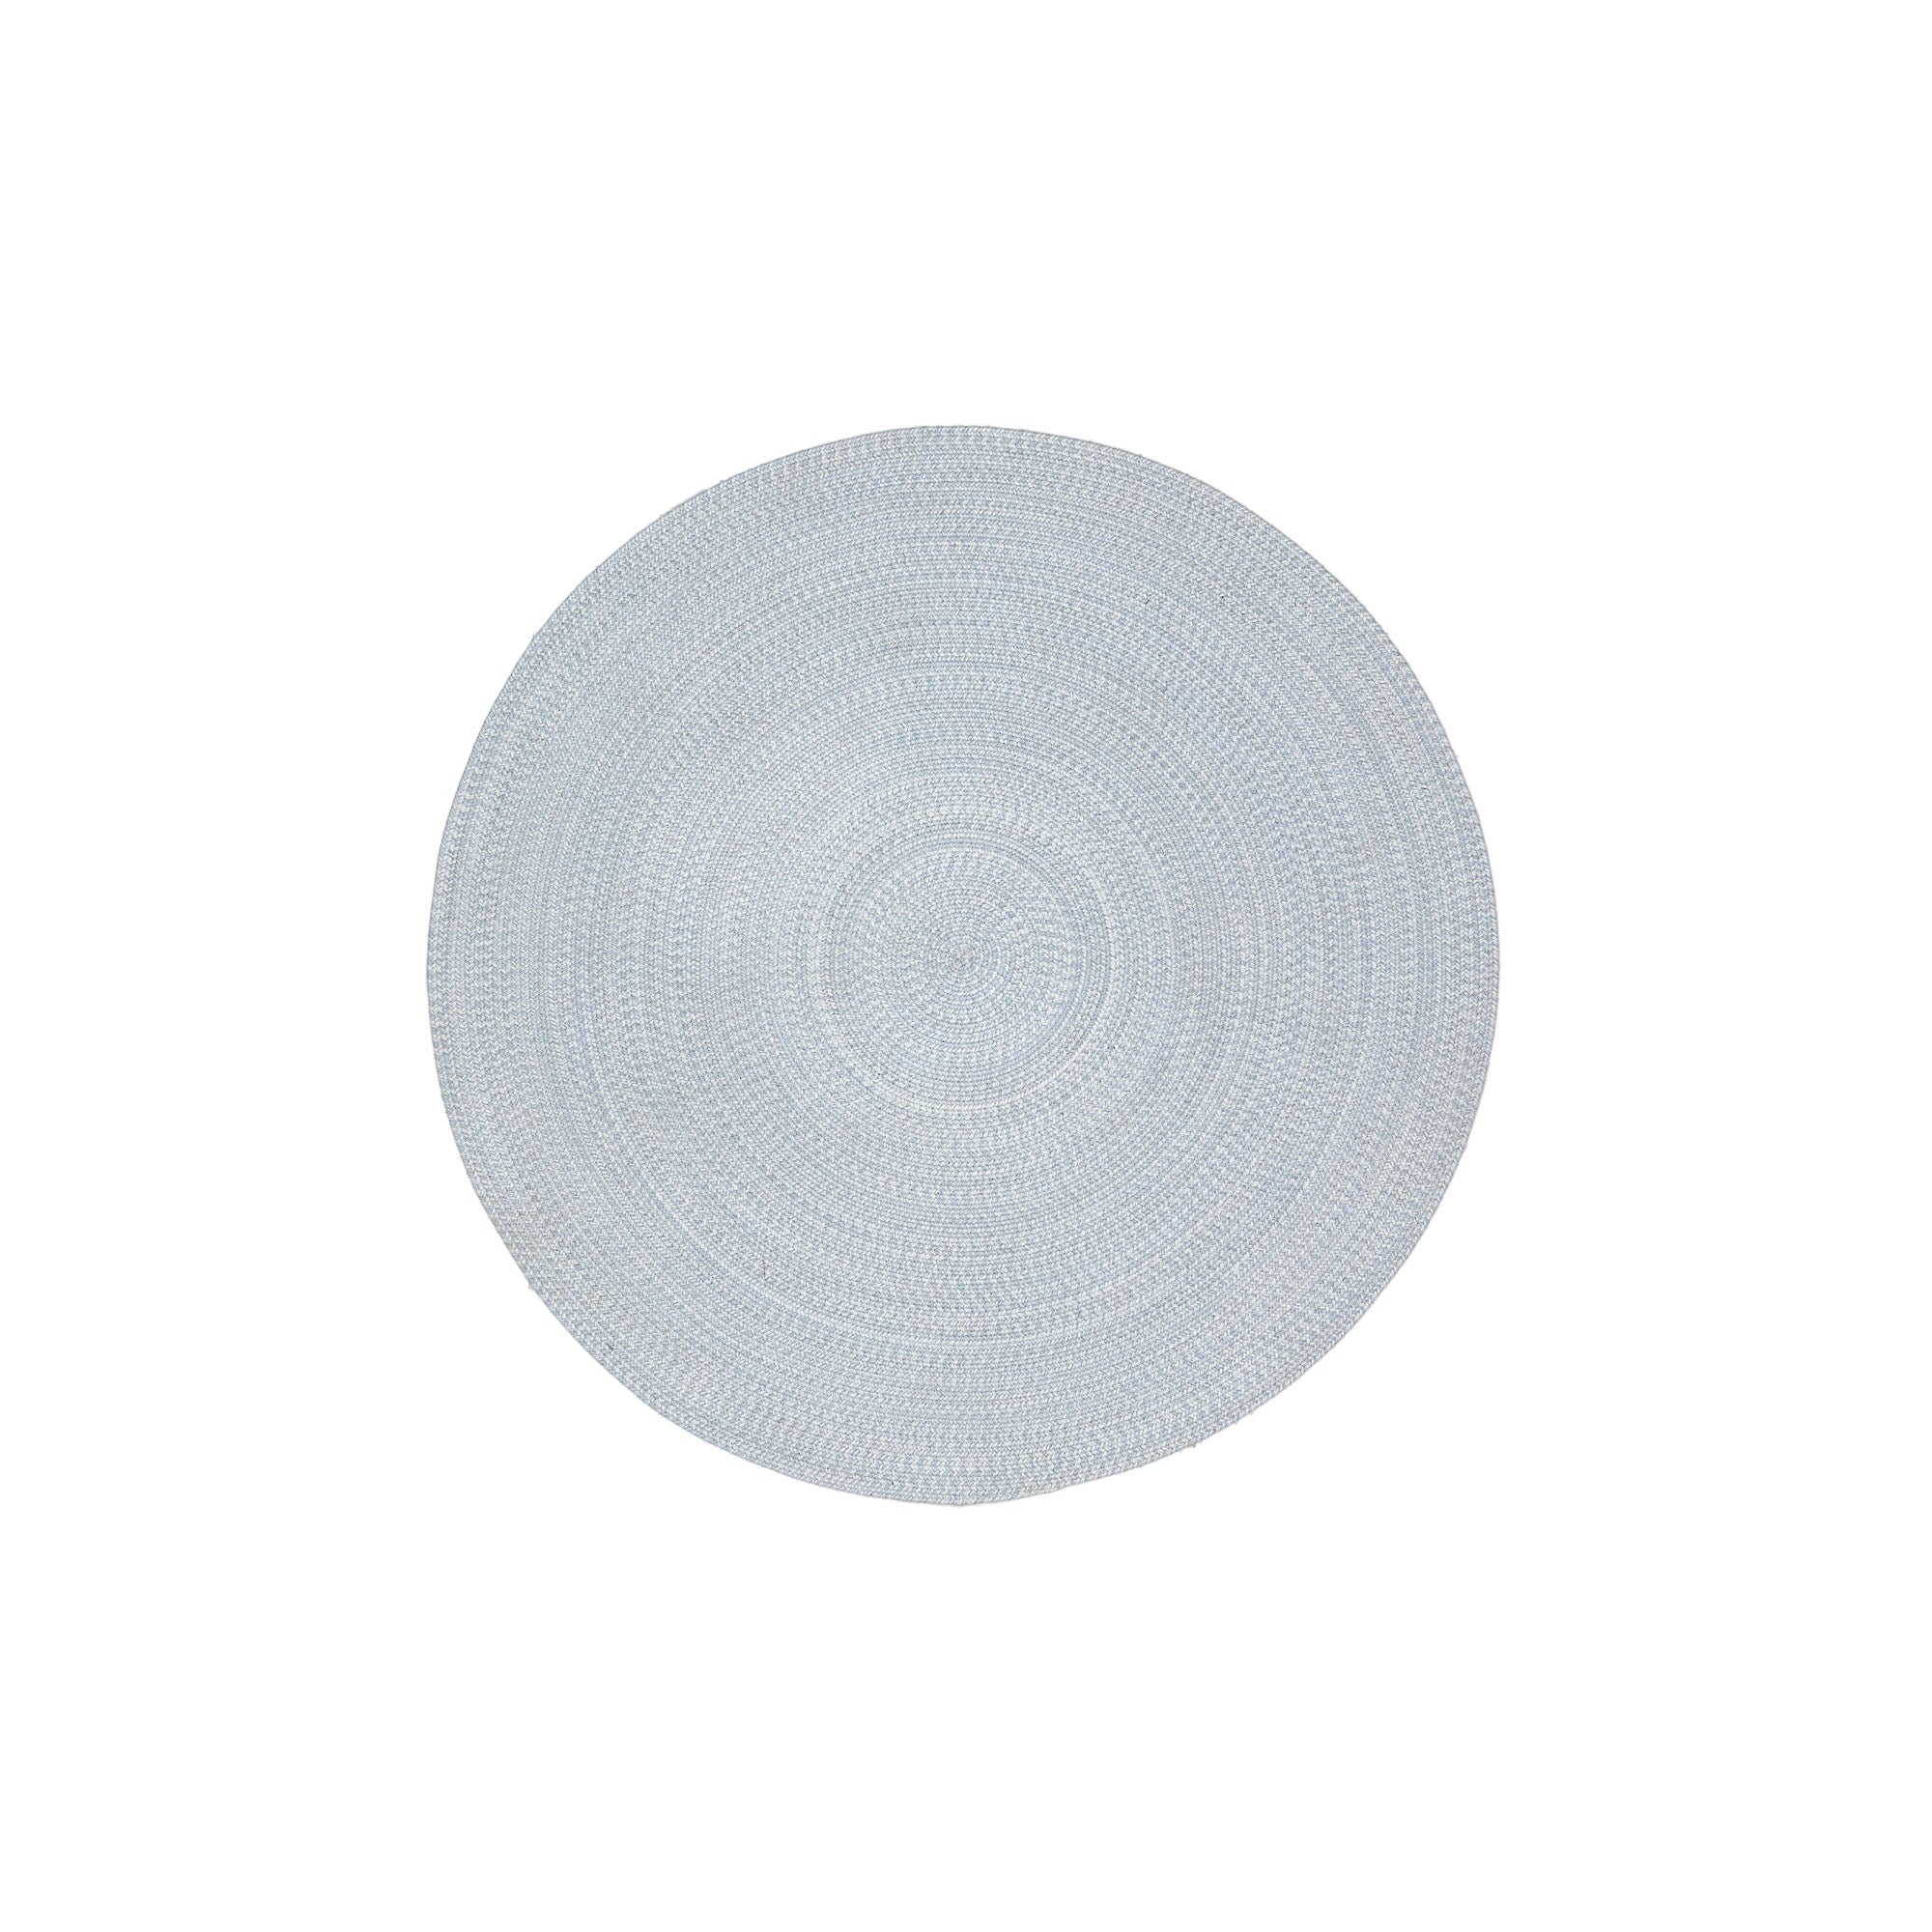 Portopi 100% PET kerek szőnyeg szürke színben, Ø 150 cm